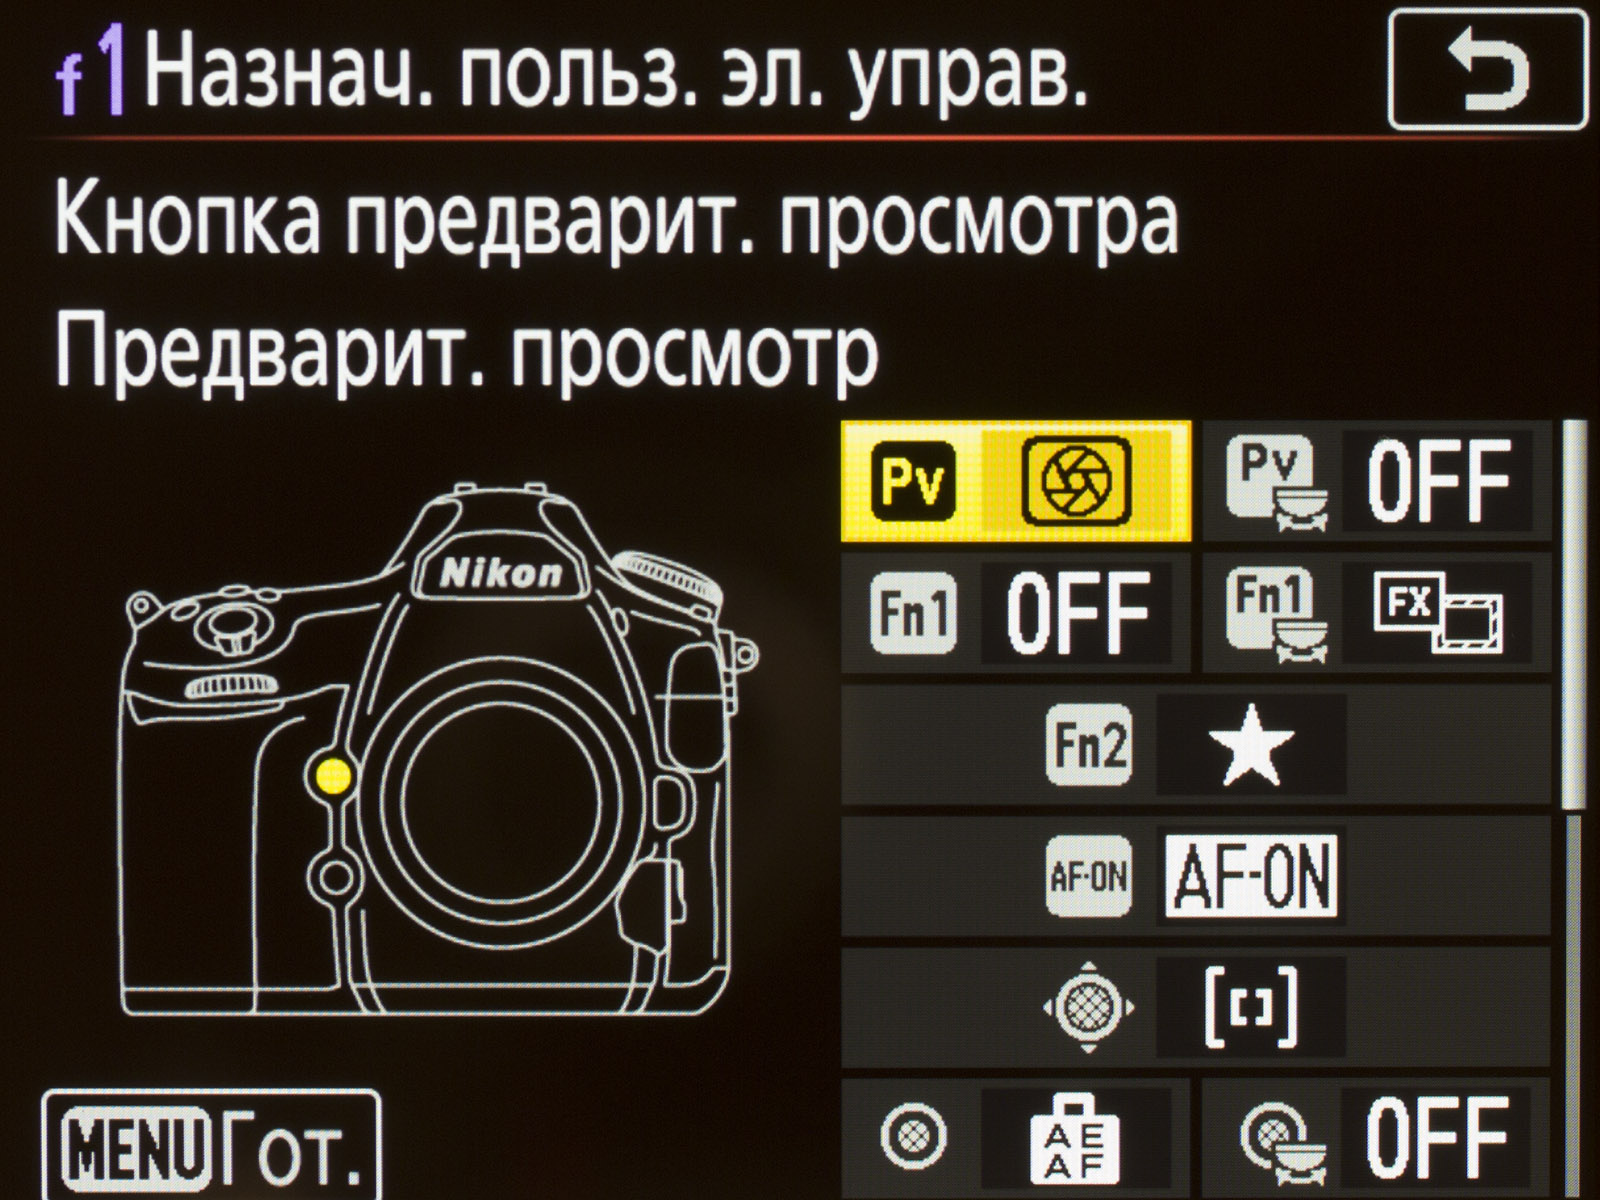 Настройки фотоаппарата. Nikon кнопка предварительного просмотра.